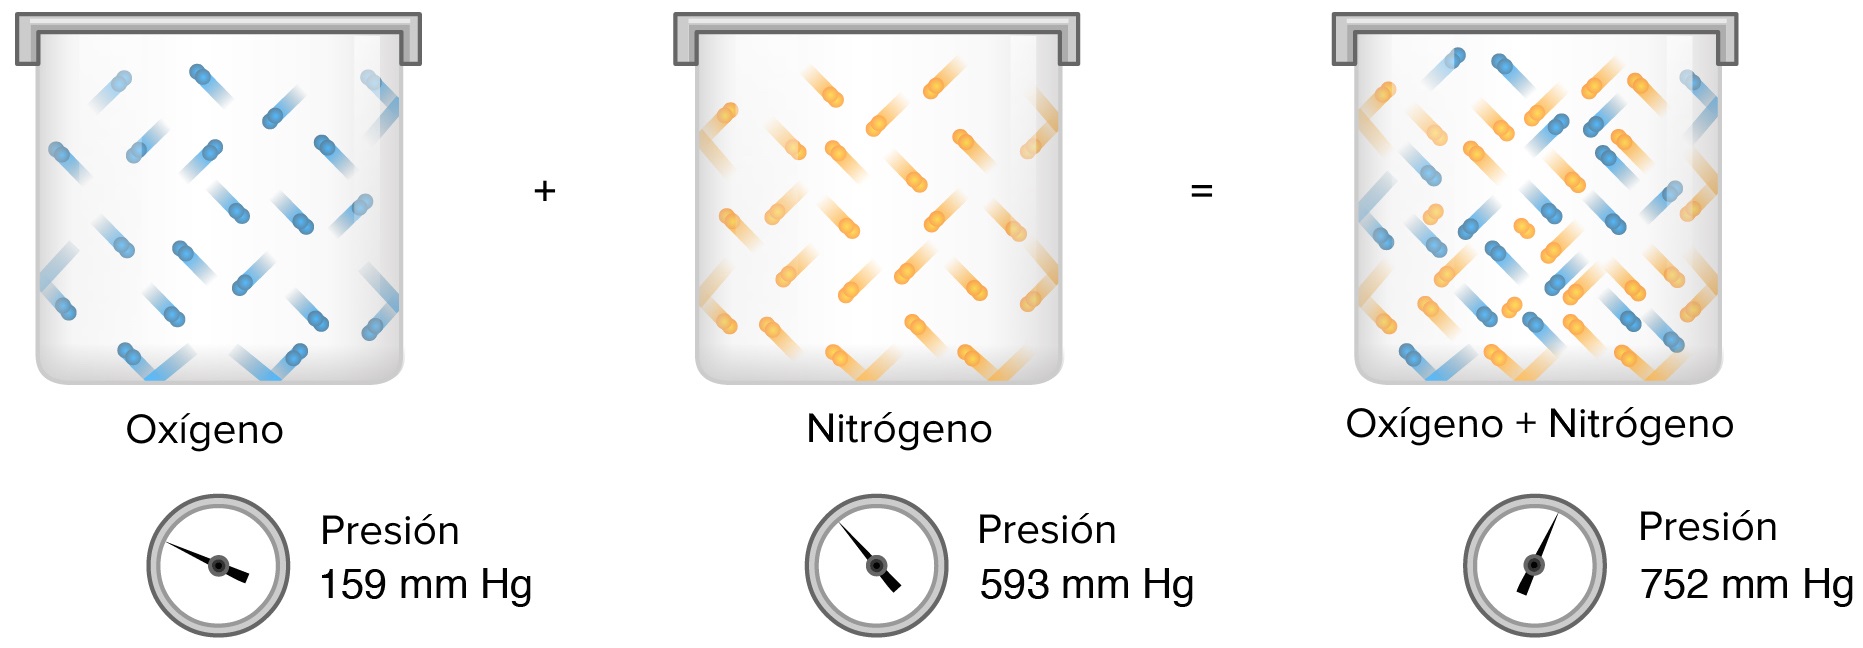 De izquierda a derecha: un recipiente con gas oxígeno a 159 mm Hg, combinado con un recipiente de tamaño idéntico con gas nitrógeno a 593 mm Hg resultará en el mismo recipiente con una mezcla de ambos gases y una presión total de 752 mm Hg. 